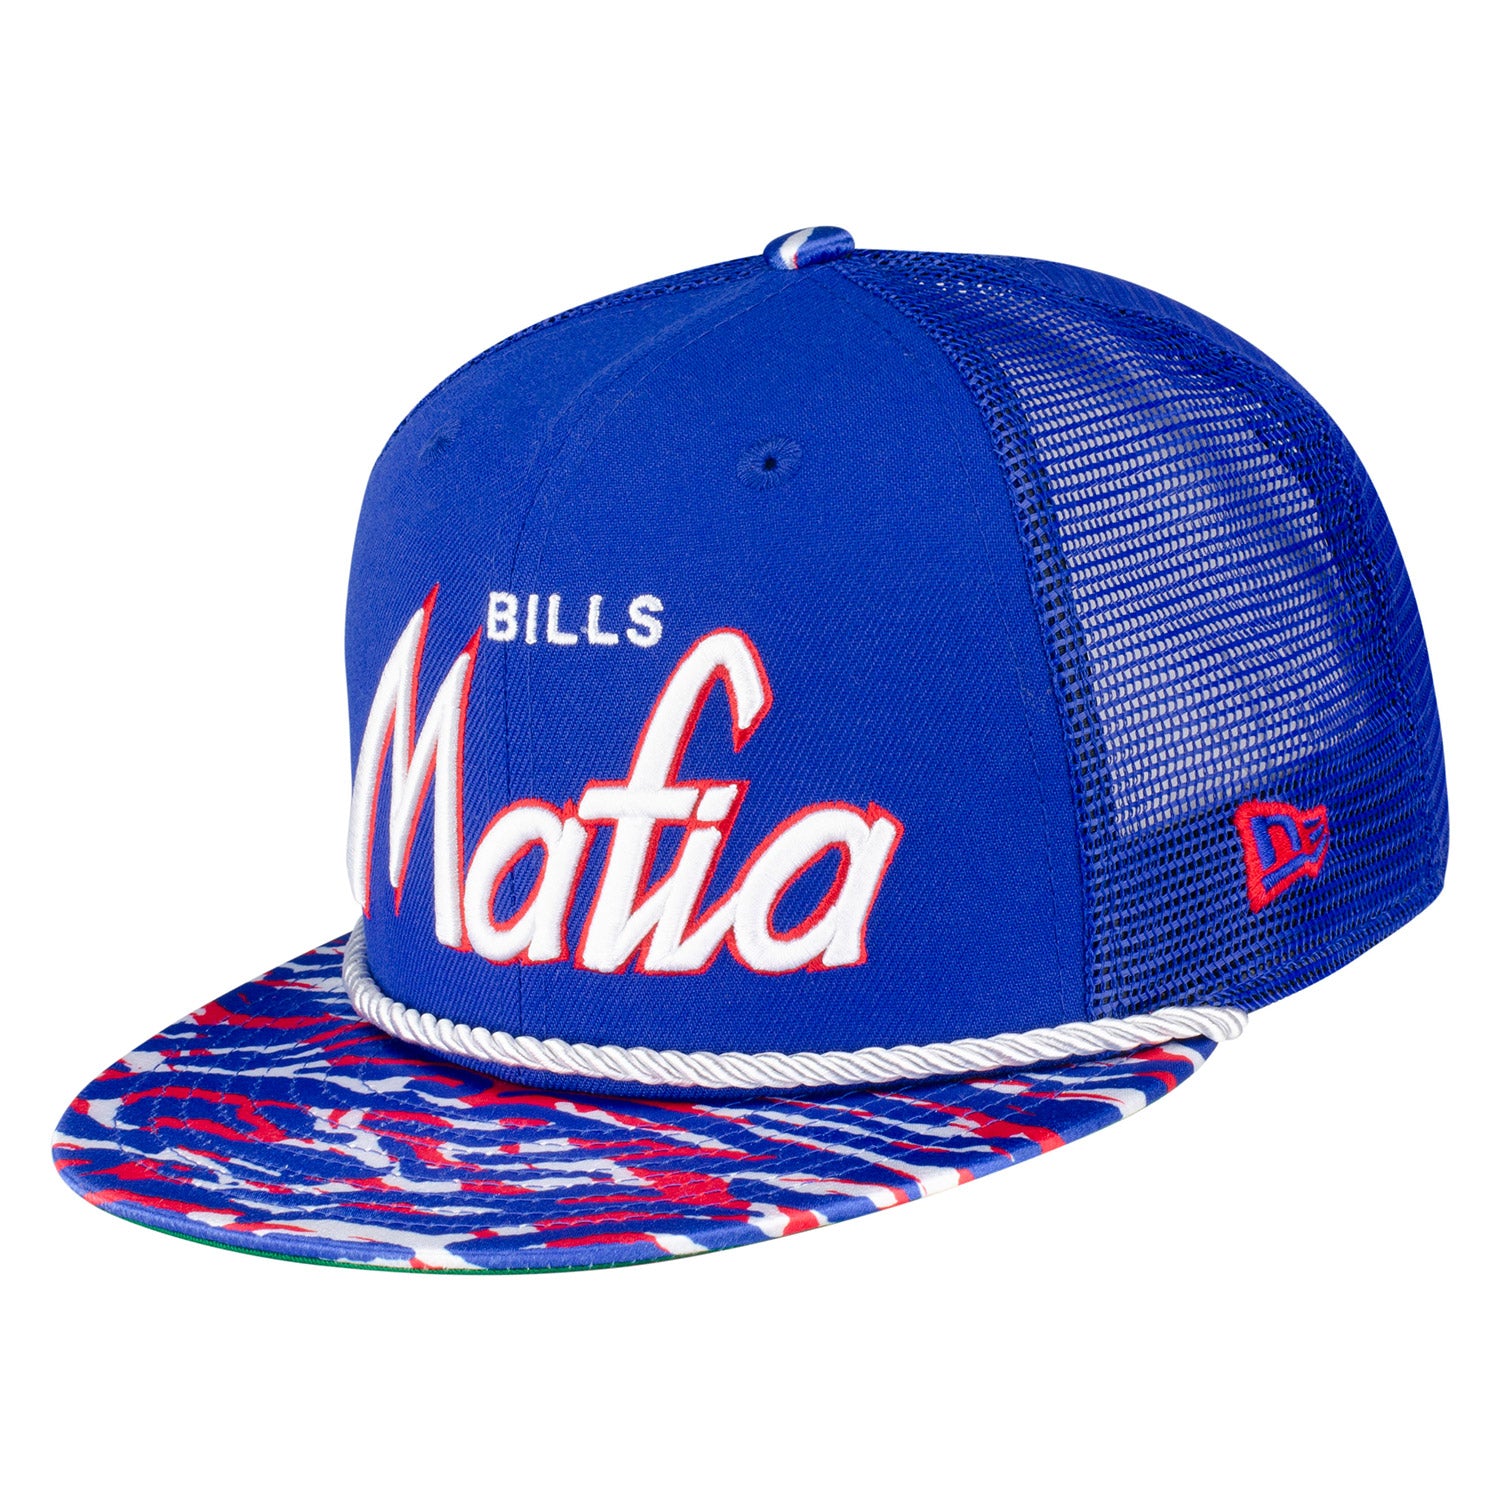 New Era Bills Mafia 9FIFTY Trucker Snapback Hat | The Bills Store